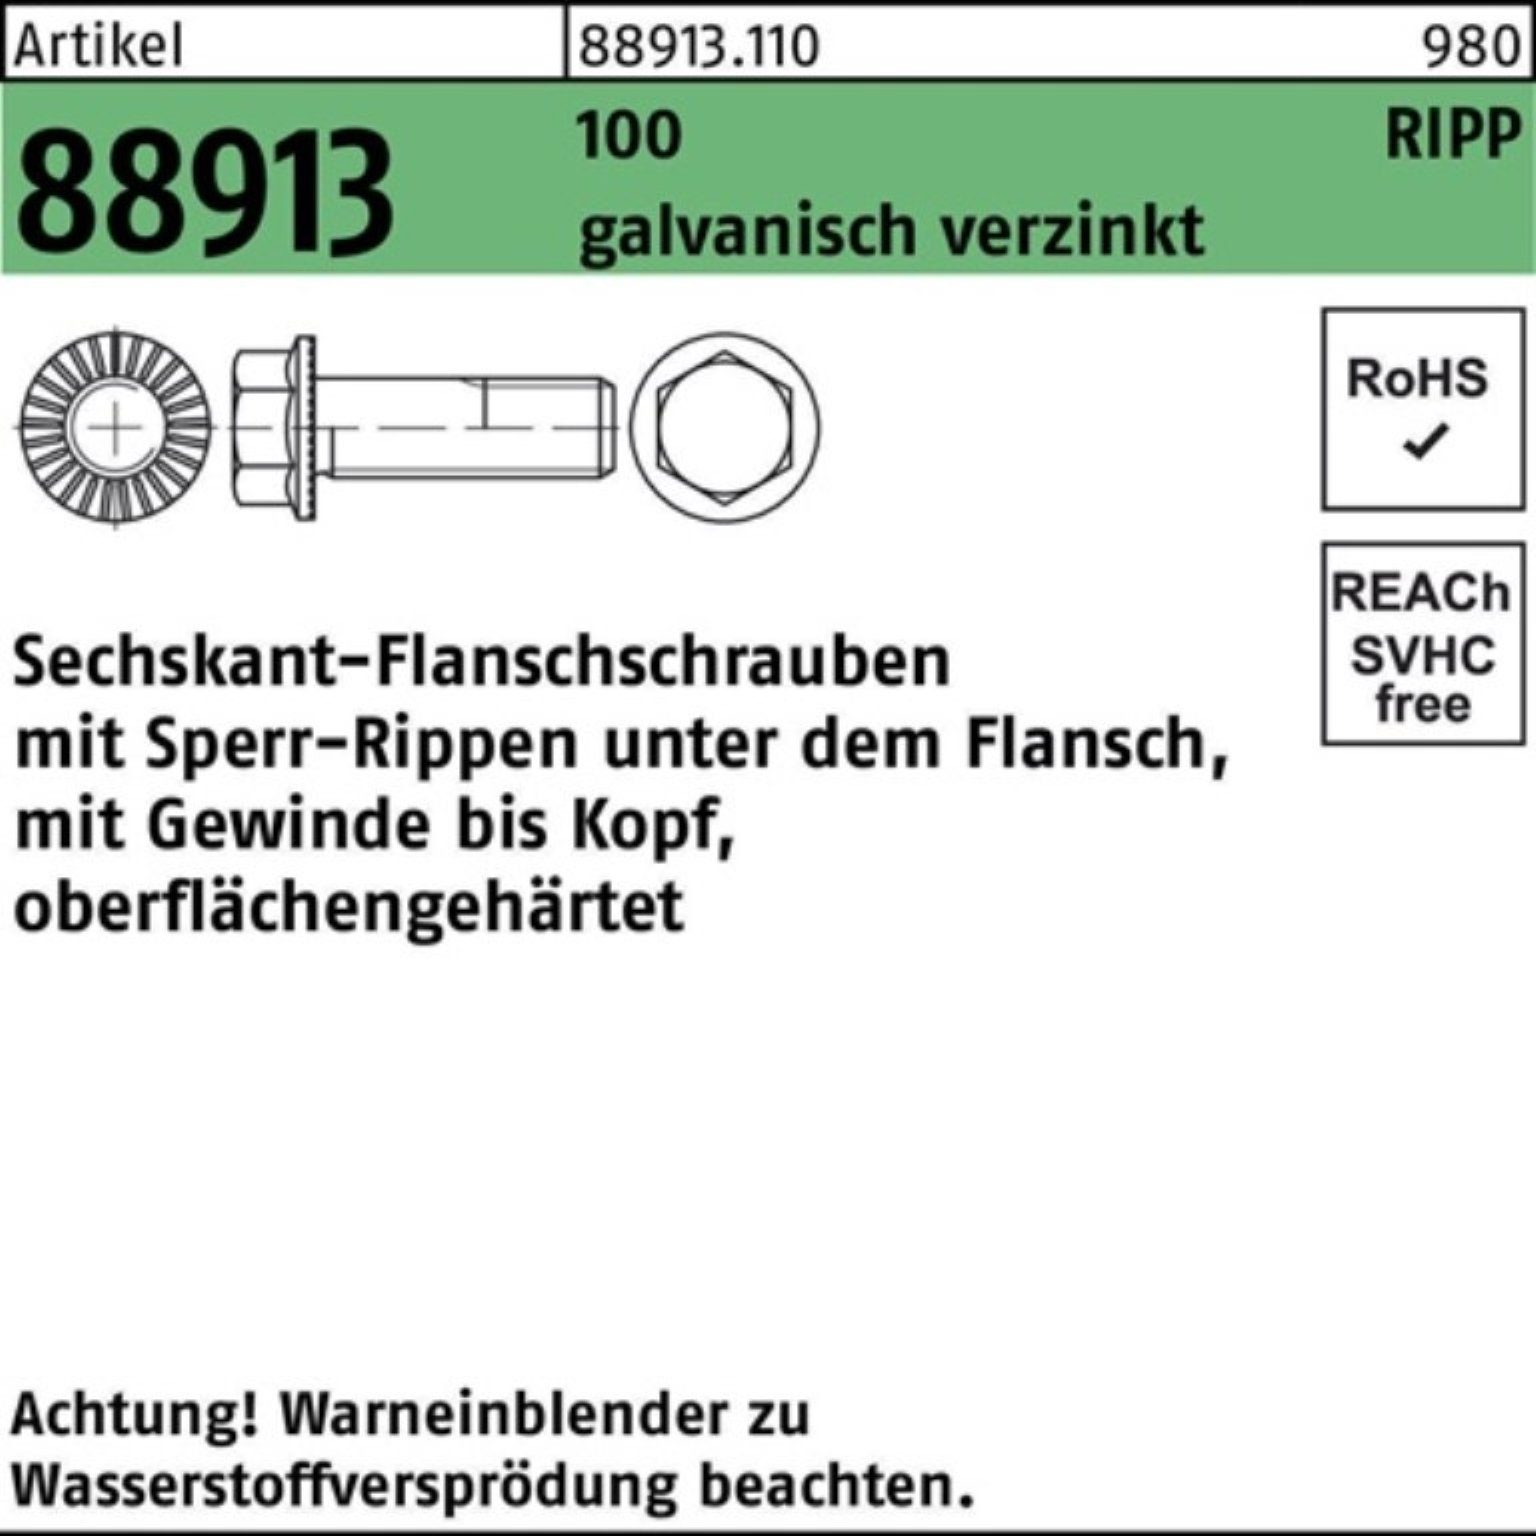 Reyher Schraube 88913 Sechskantflanschschraube 100er Sperr-Ripp R Pack M16x60 g VG 100